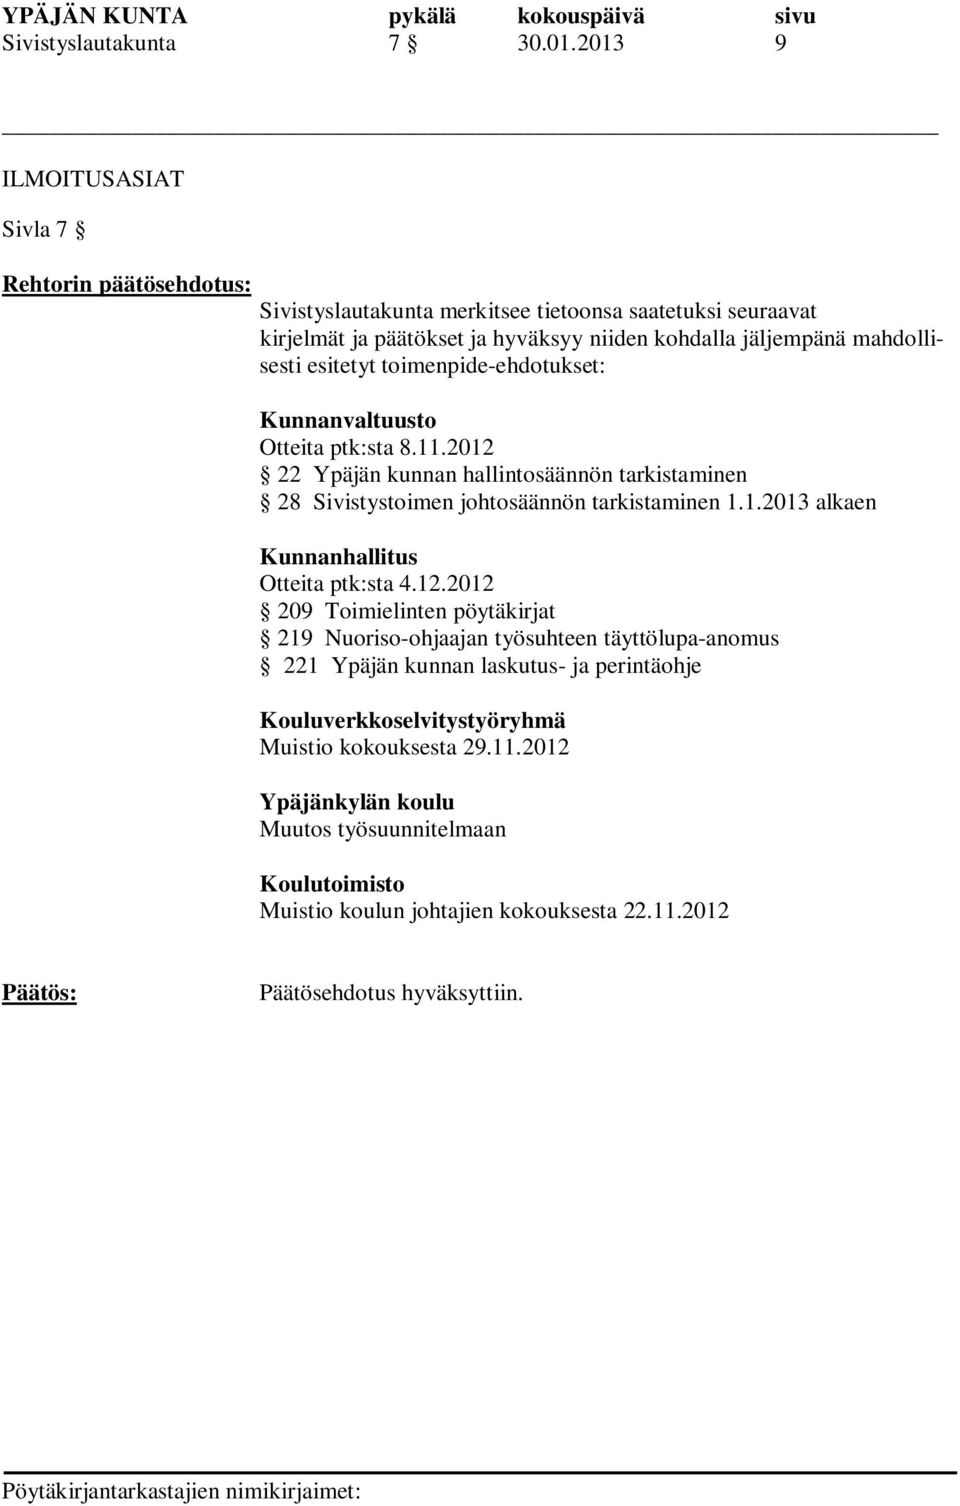 toimenpide-ehdotukset: Kunnanvaltuusto Otteita ptk:sta 8.11.2012 22 Ypäjän kunnan hallintosäännön tarkistaminen 28 Sivistystoimen johtosäännön tarkistaminen 1.1.2013 alkaen Kunnanhallitus Otteita ptk:sta 4.